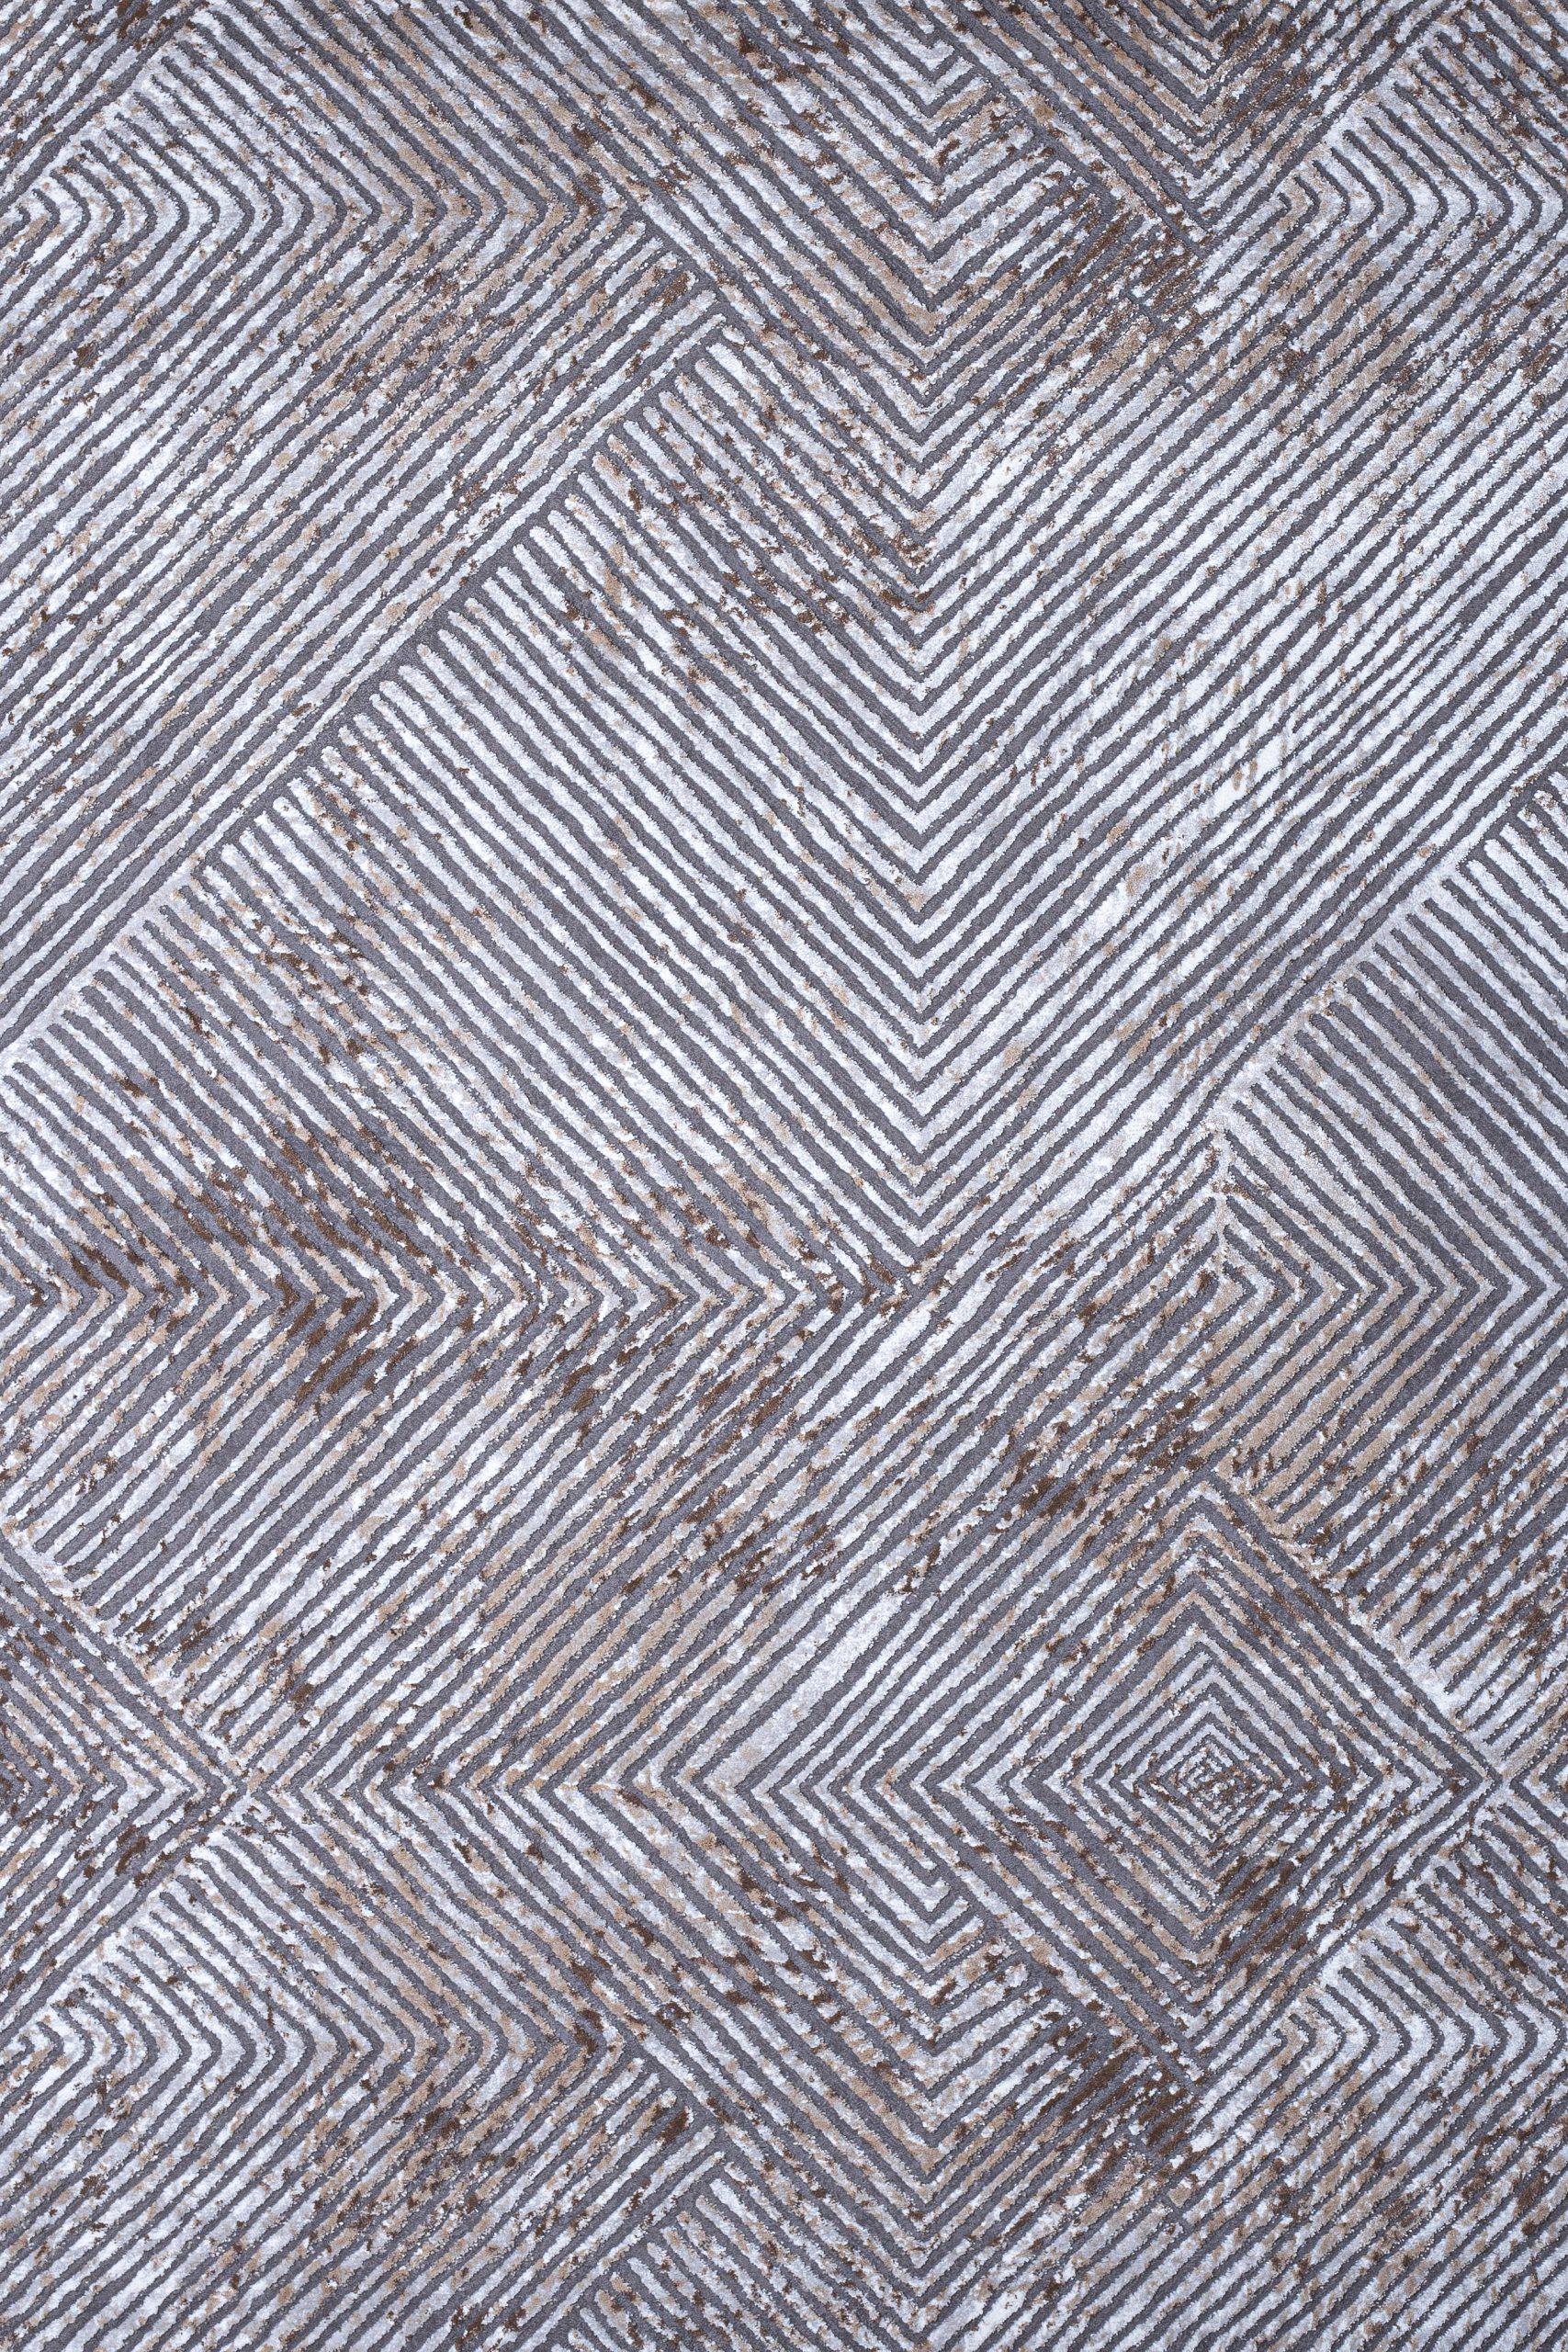 Γραμμικό χαλί γκρι μπεζ Ostia 7100/976 - 1,60x2,30 Colore Colori